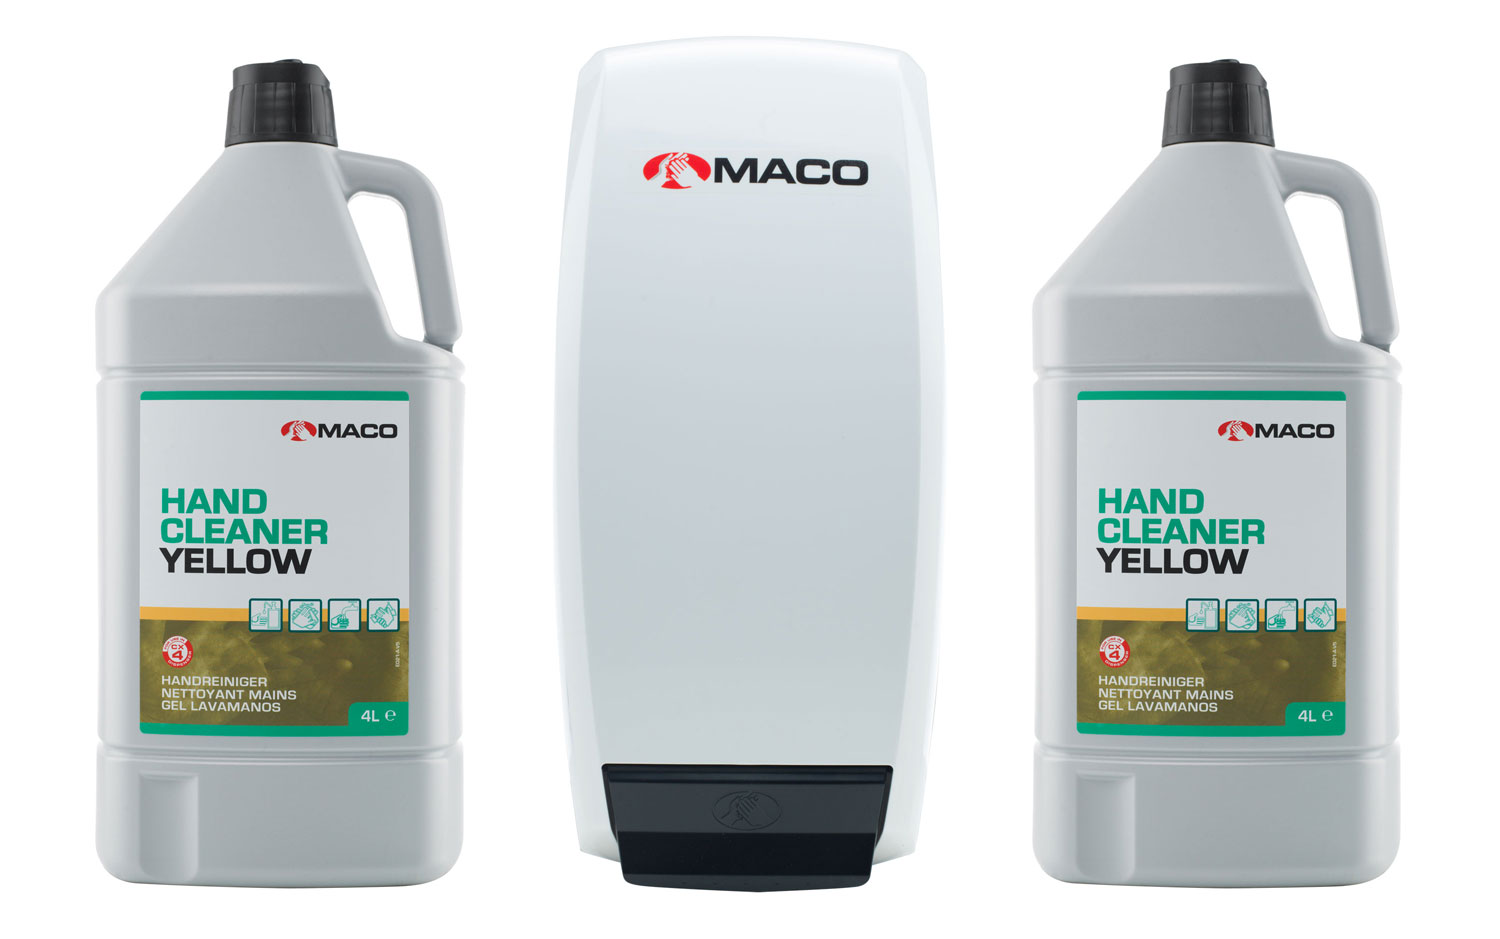 MACO Savon nettoyant pour mains - Jaune - set 2x4 liters and dispenser 2 x 4 ltr(s)